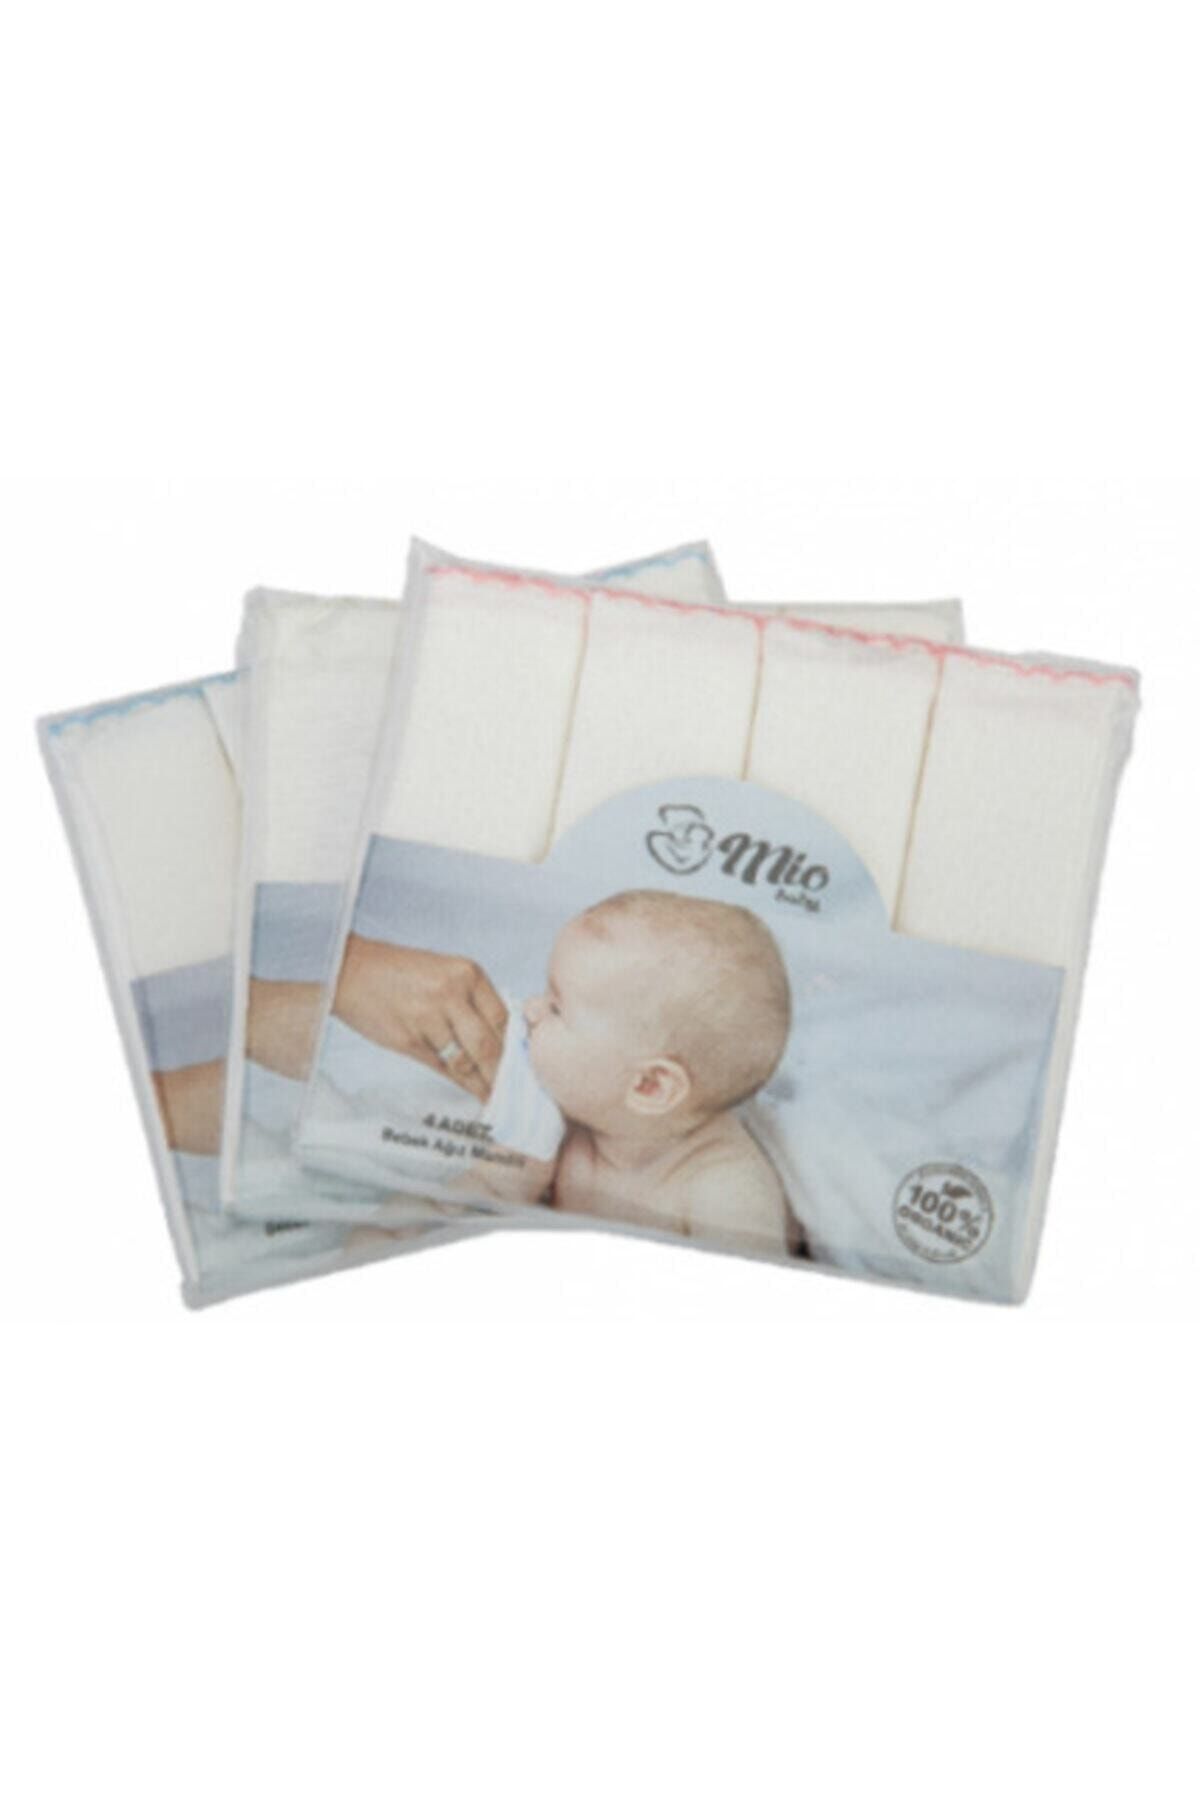 Genel Markalar Mio Baby 4 Adet Bebek Ağız Mendili 100% Organic